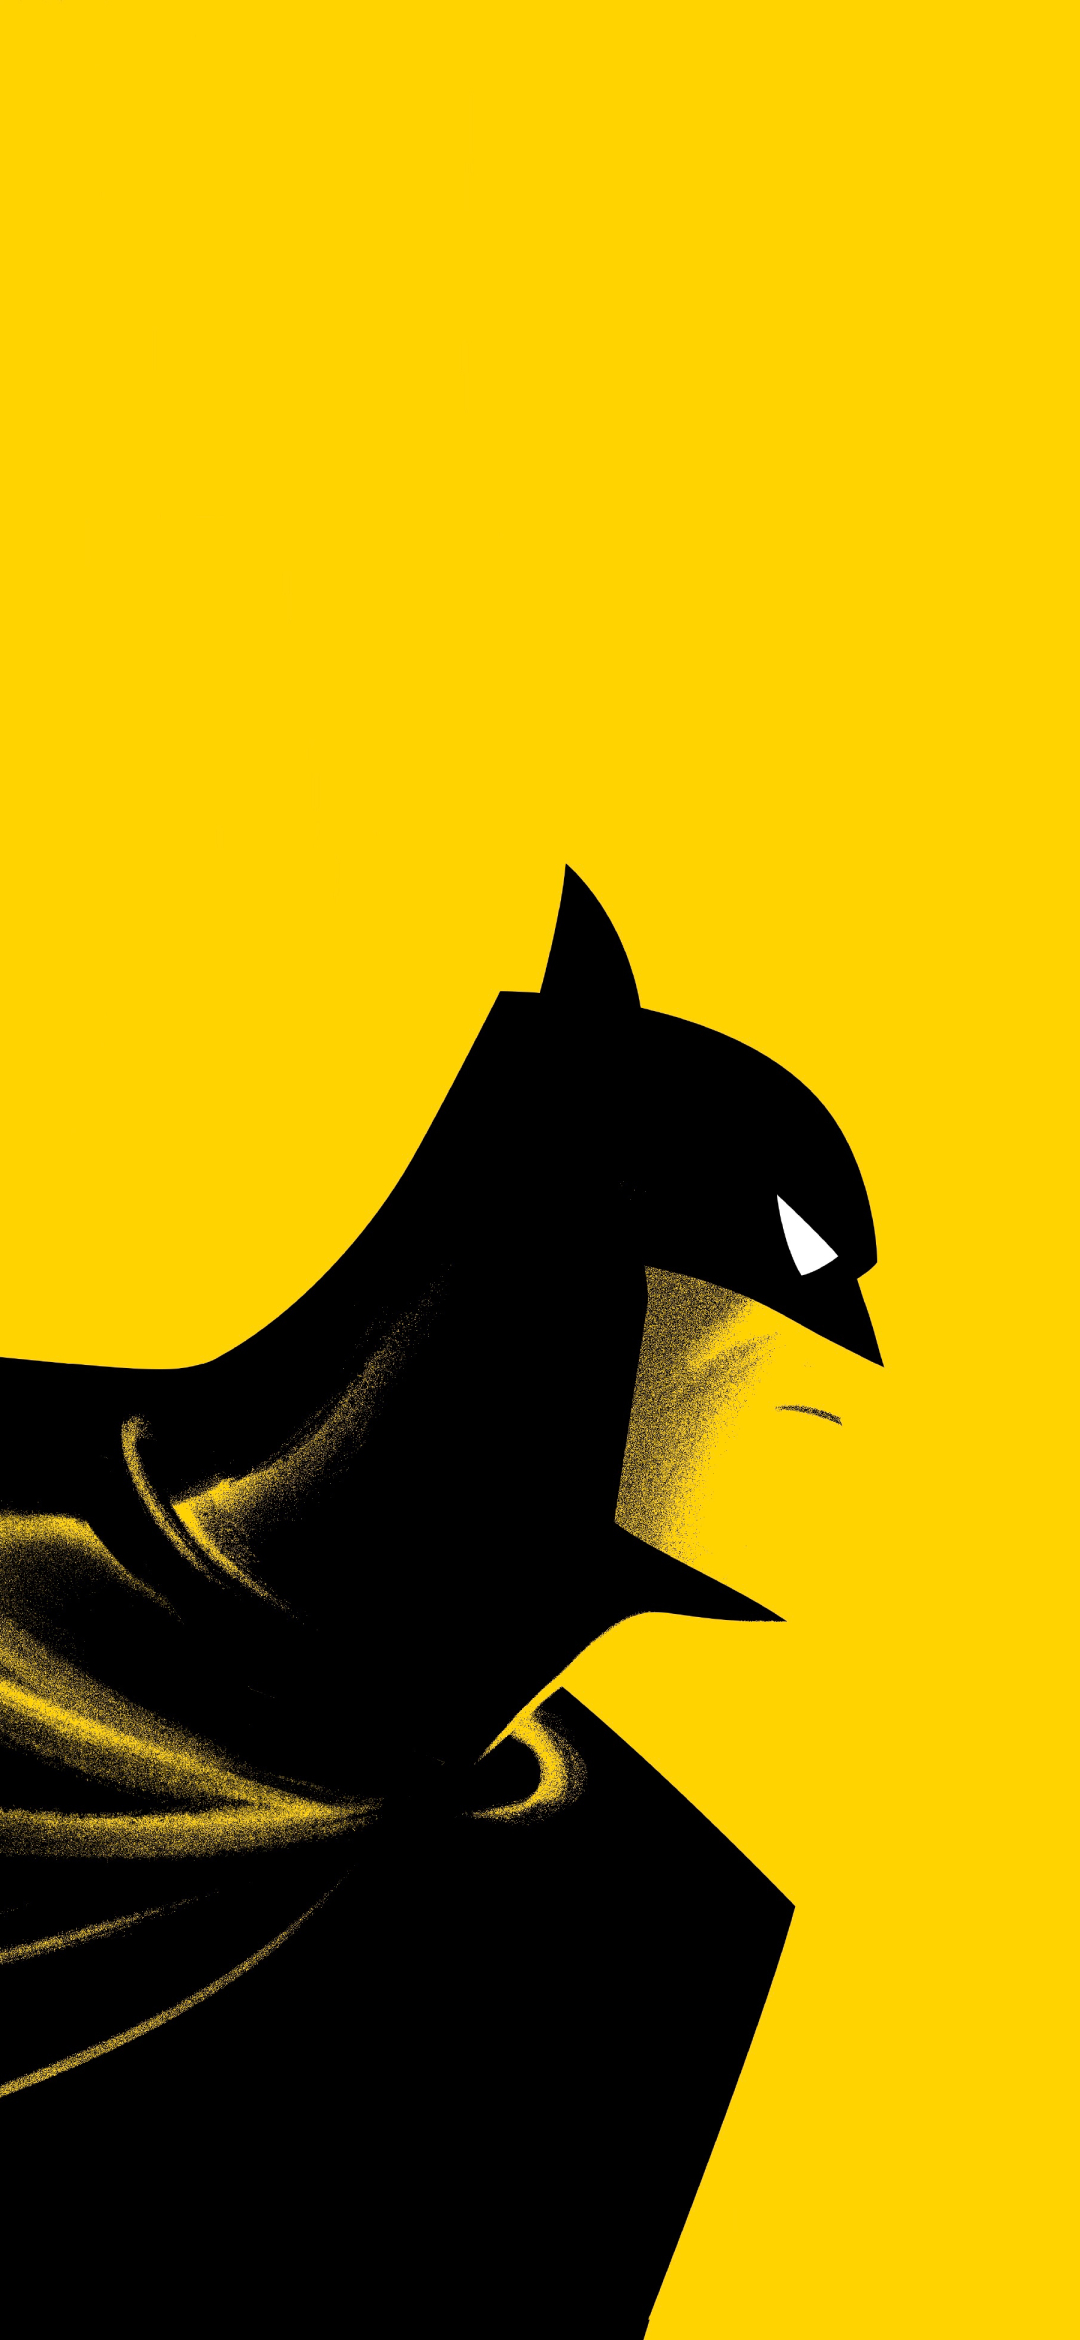 Descarga gratuita de fondo de pantalla para móvil de Series De Televisión, Hombre Murciélago, Batman: La Serie Animada.